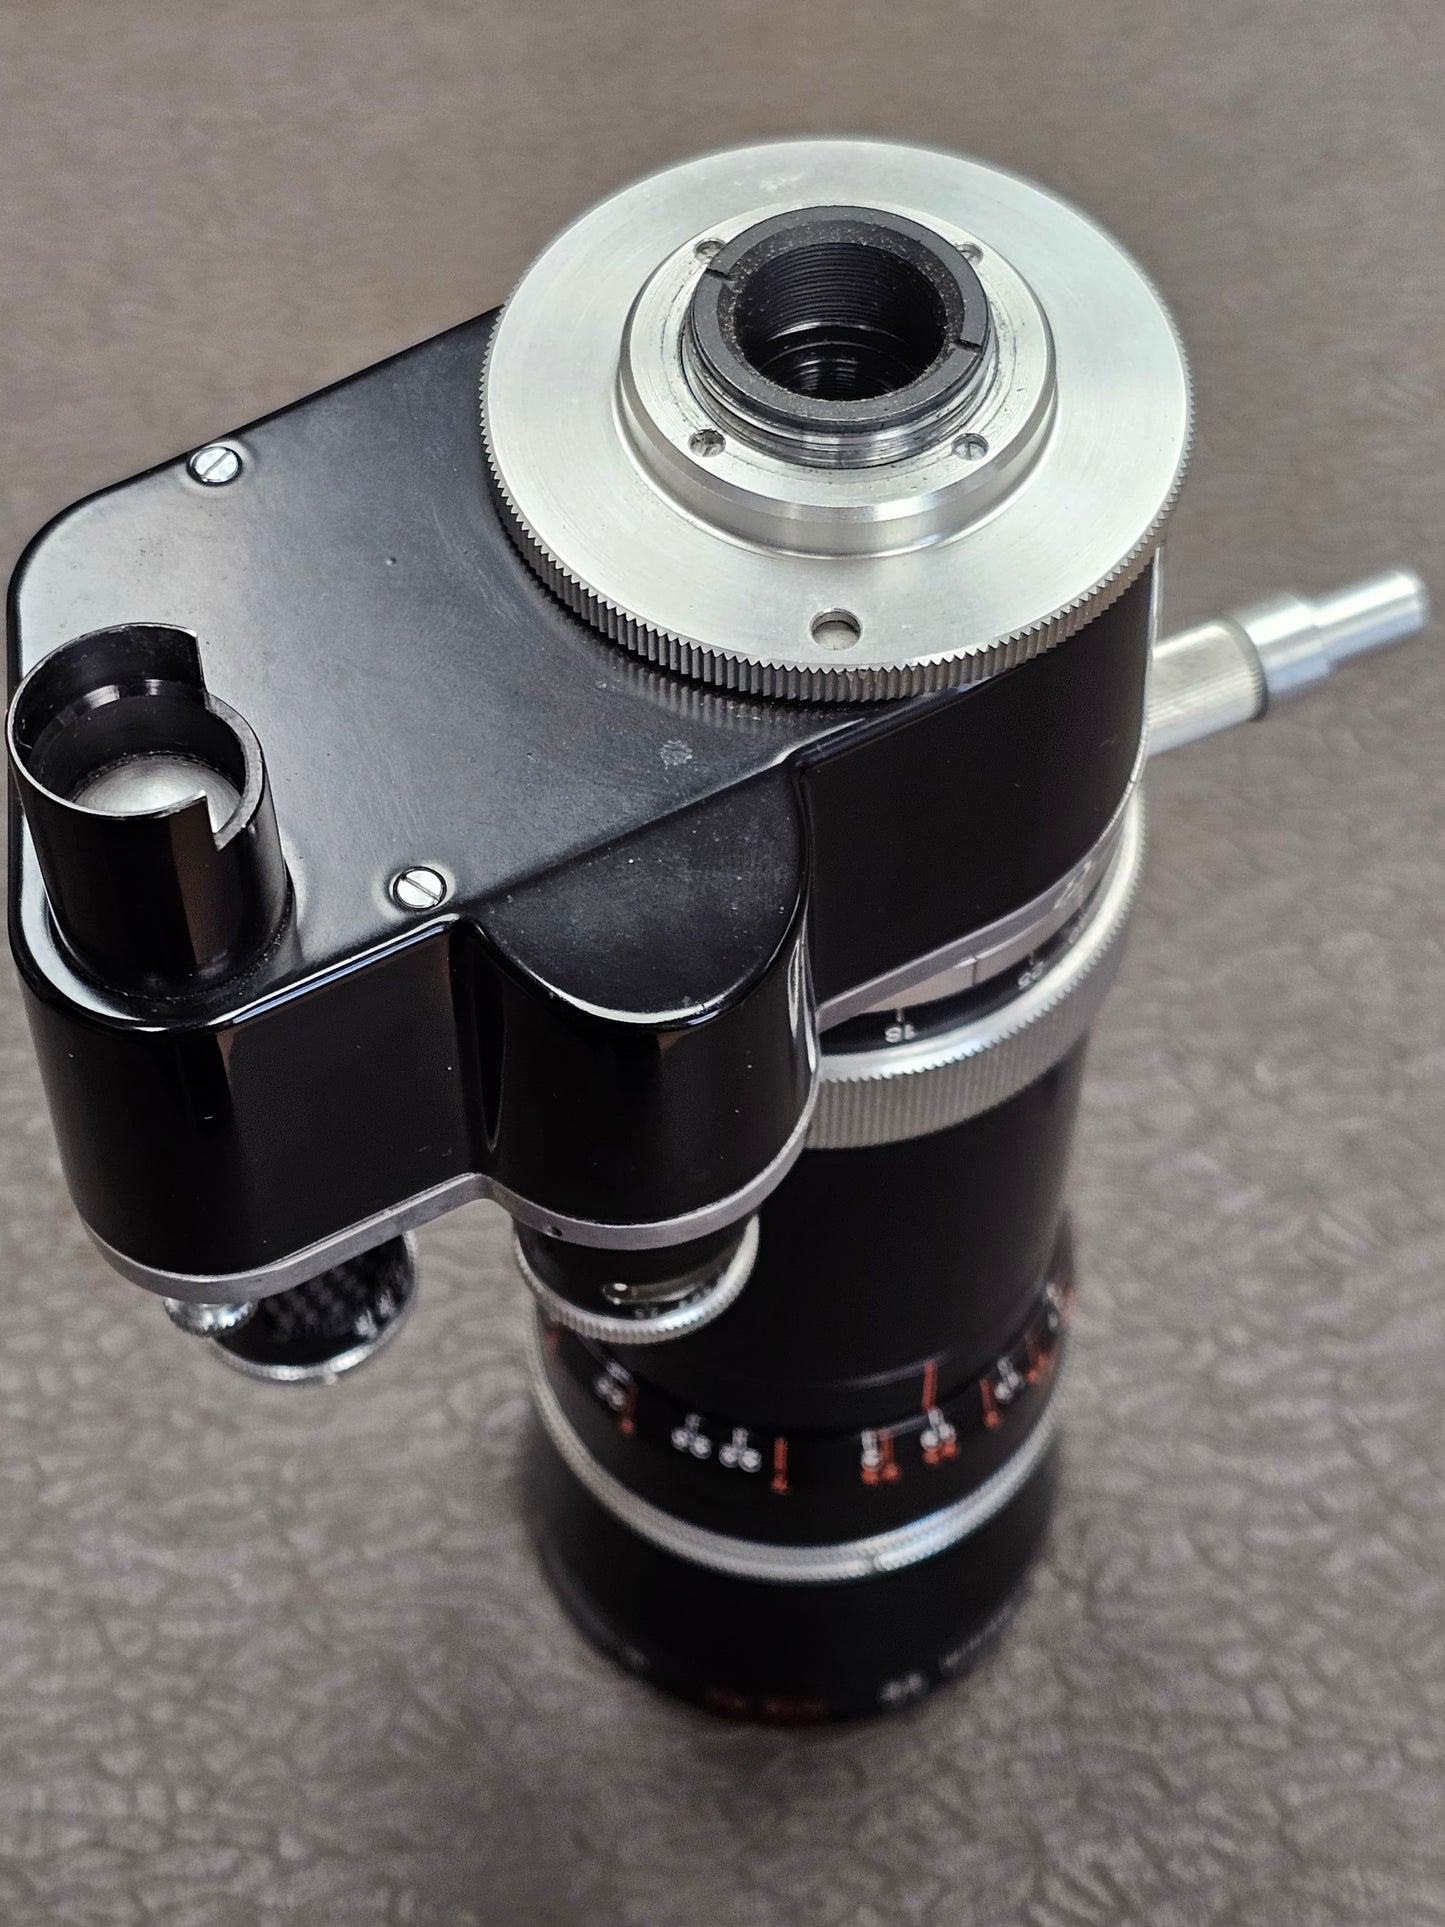 Kern Vario-Switar 18-86mm EE f/2.5 H16 RX C-Mount Zoom Lens S# 1090315